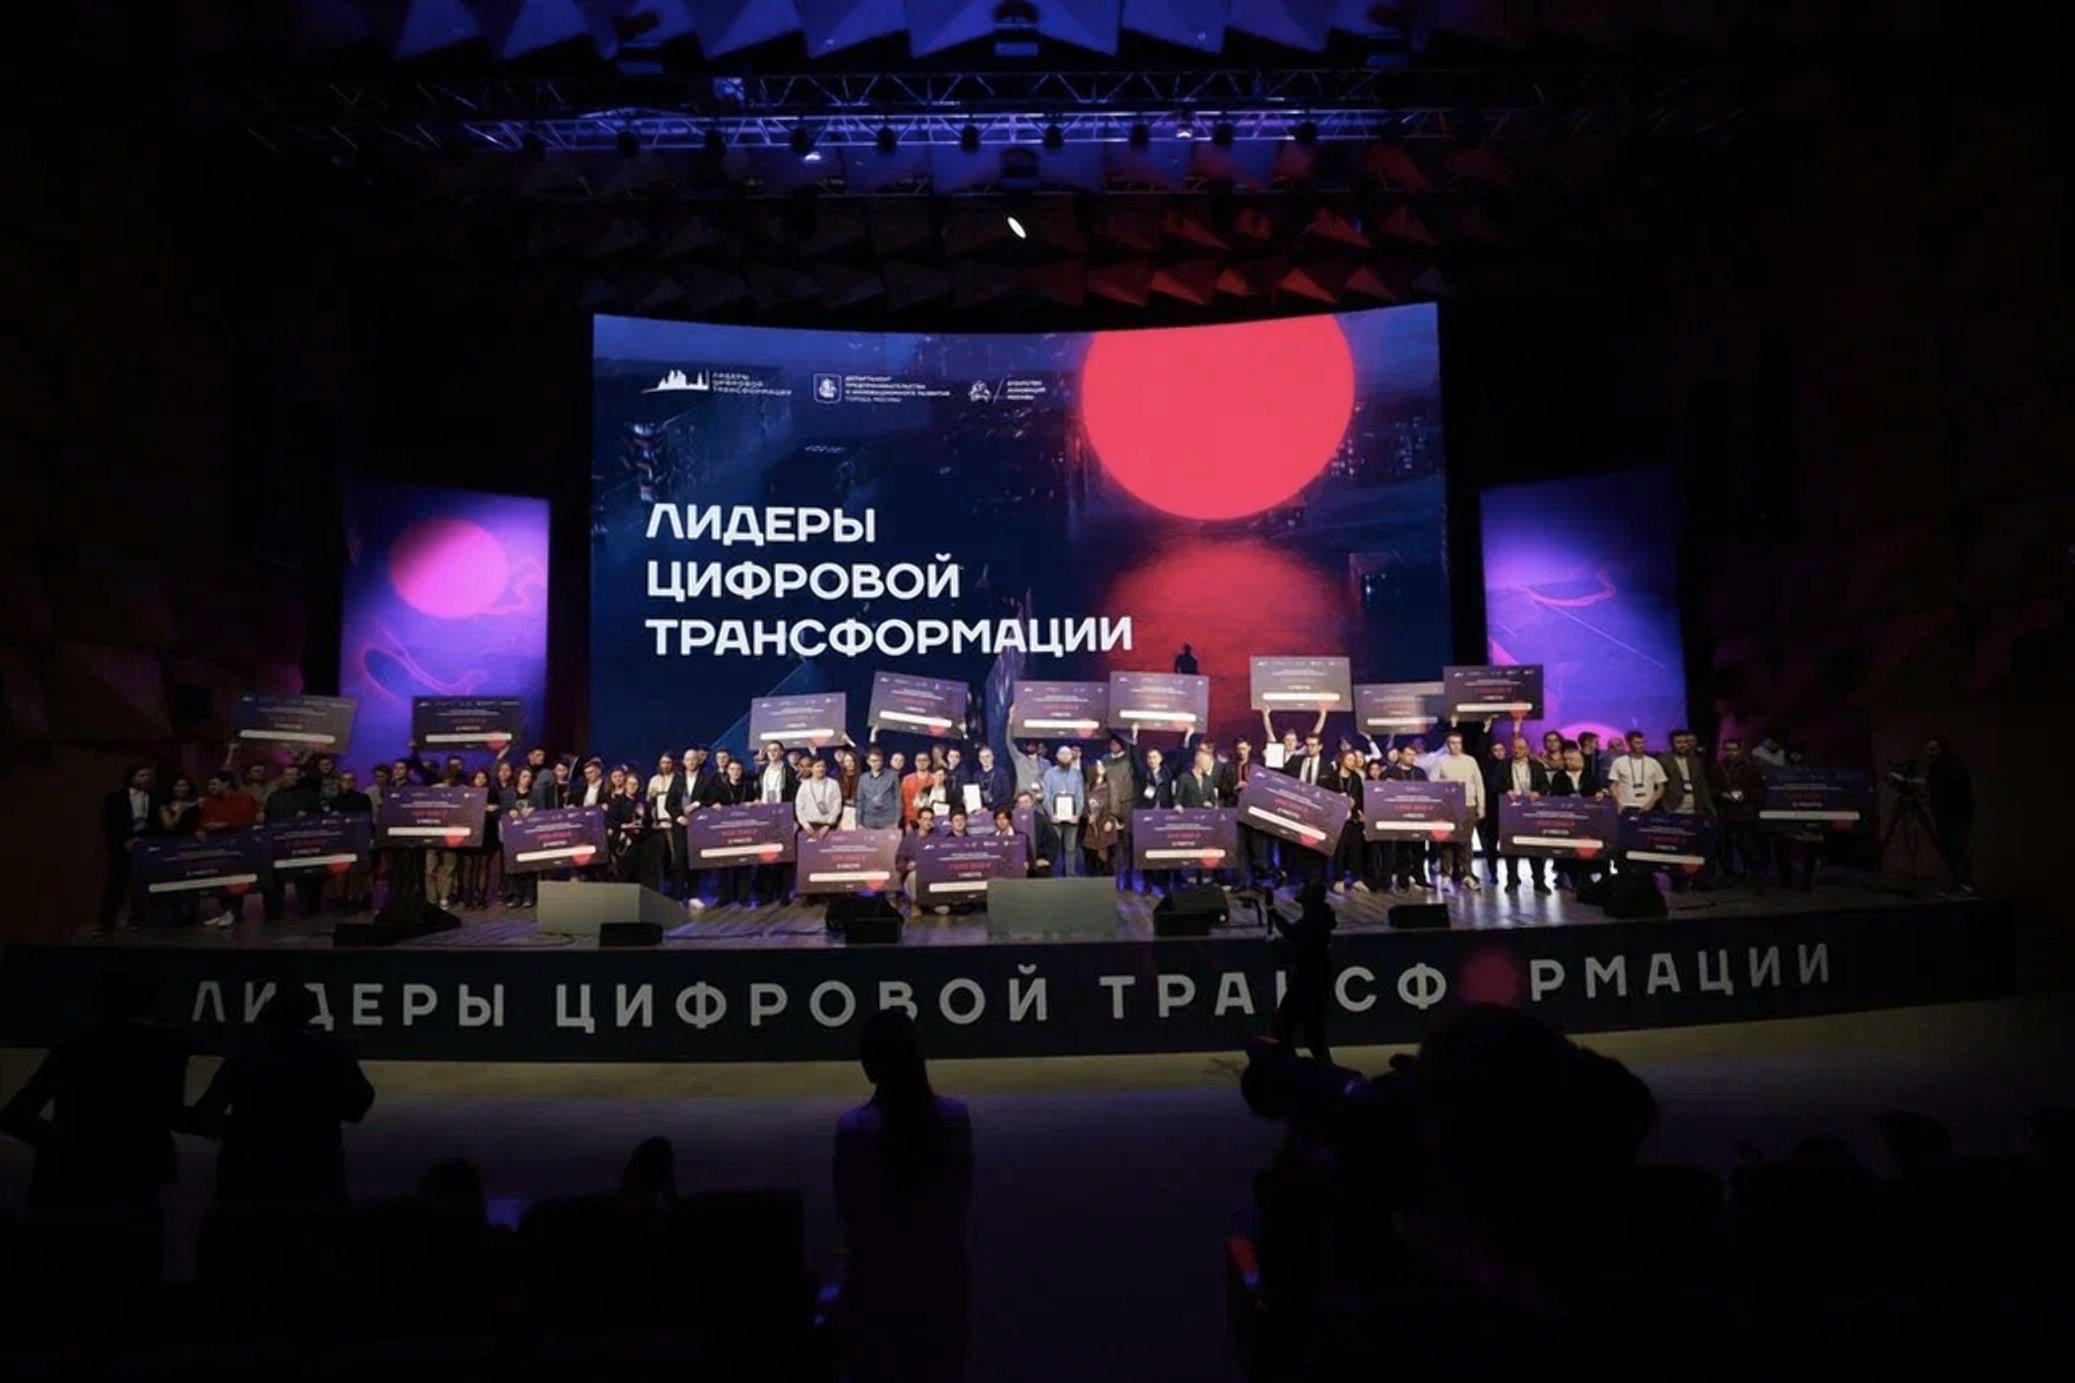 Лидеры цифровой трансформации: в столице объявили лауреатов премии мэра Москвы